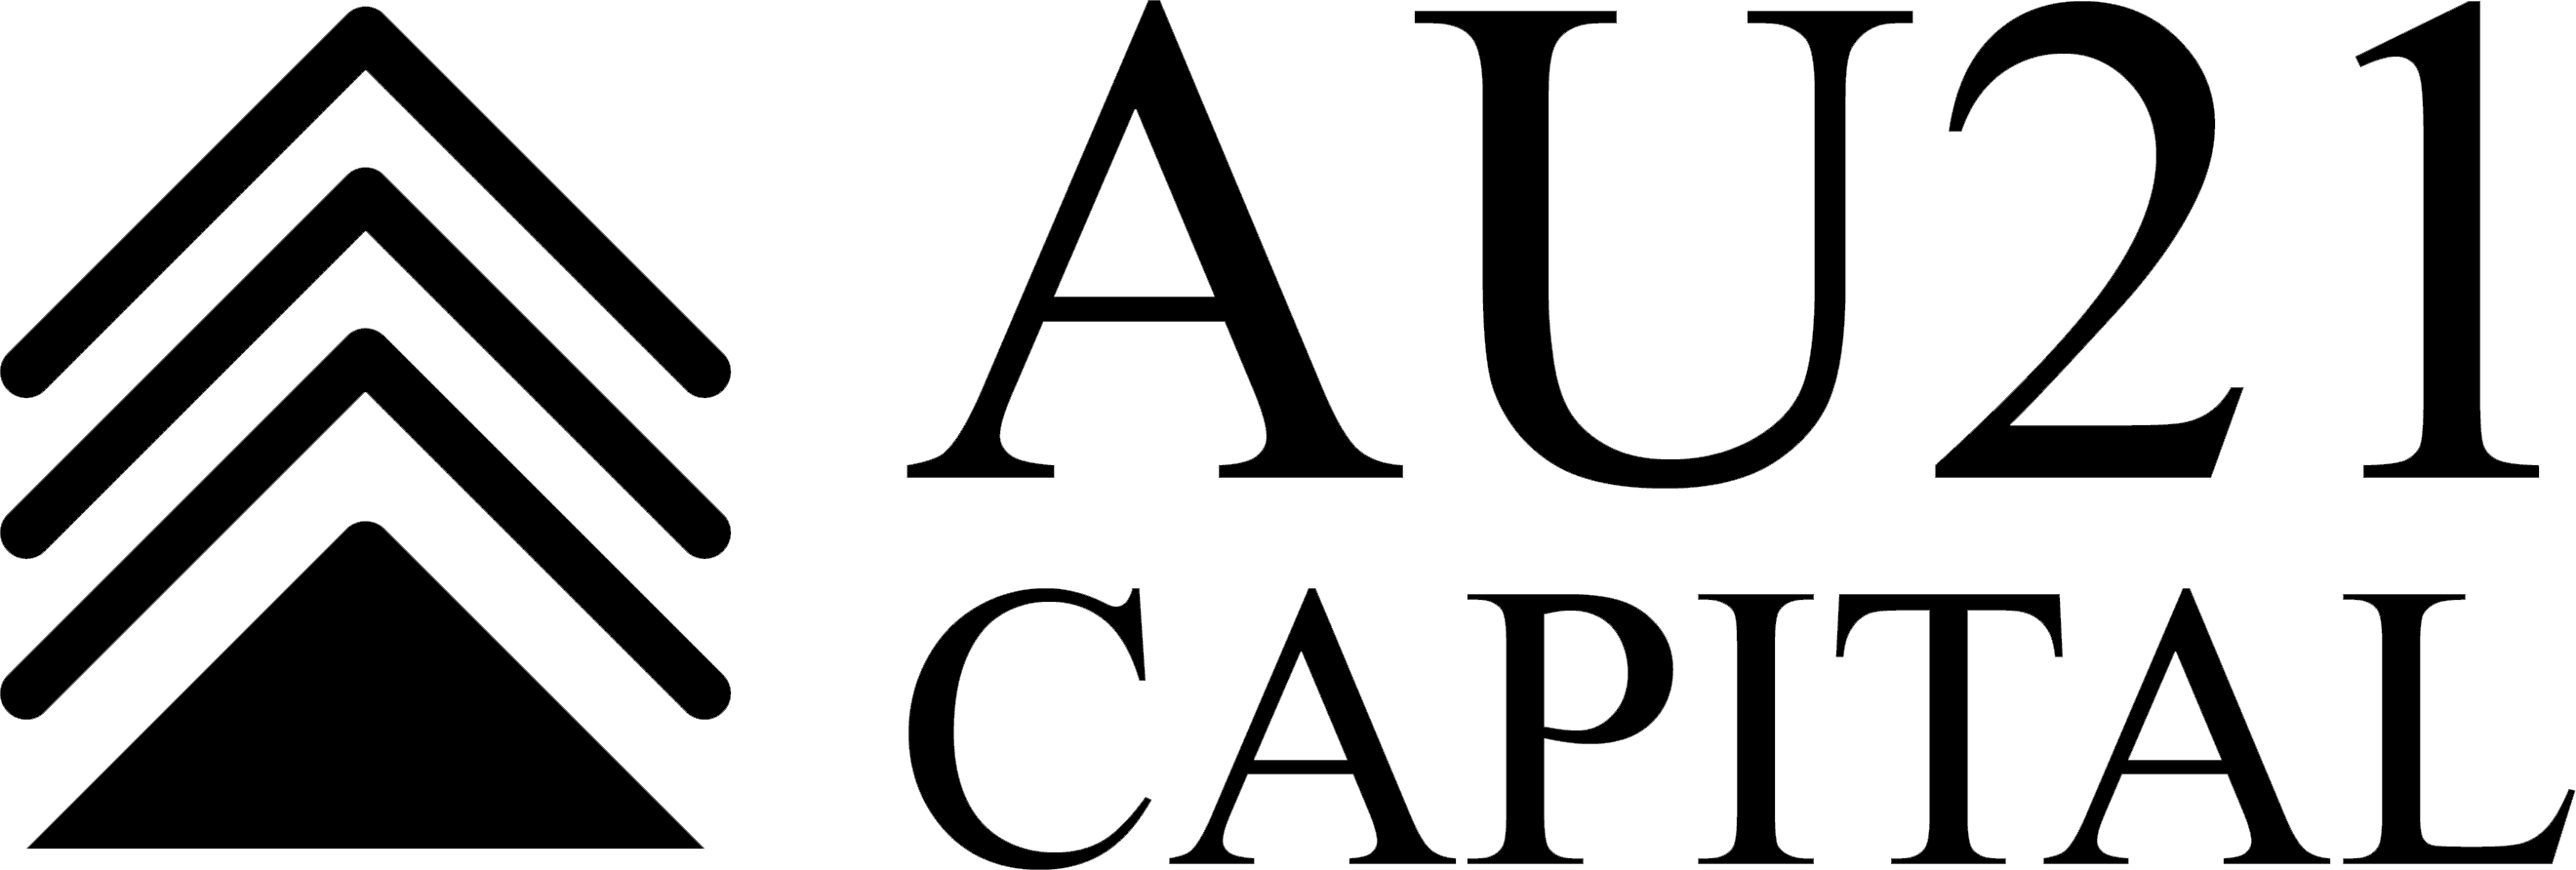 AU21 logo